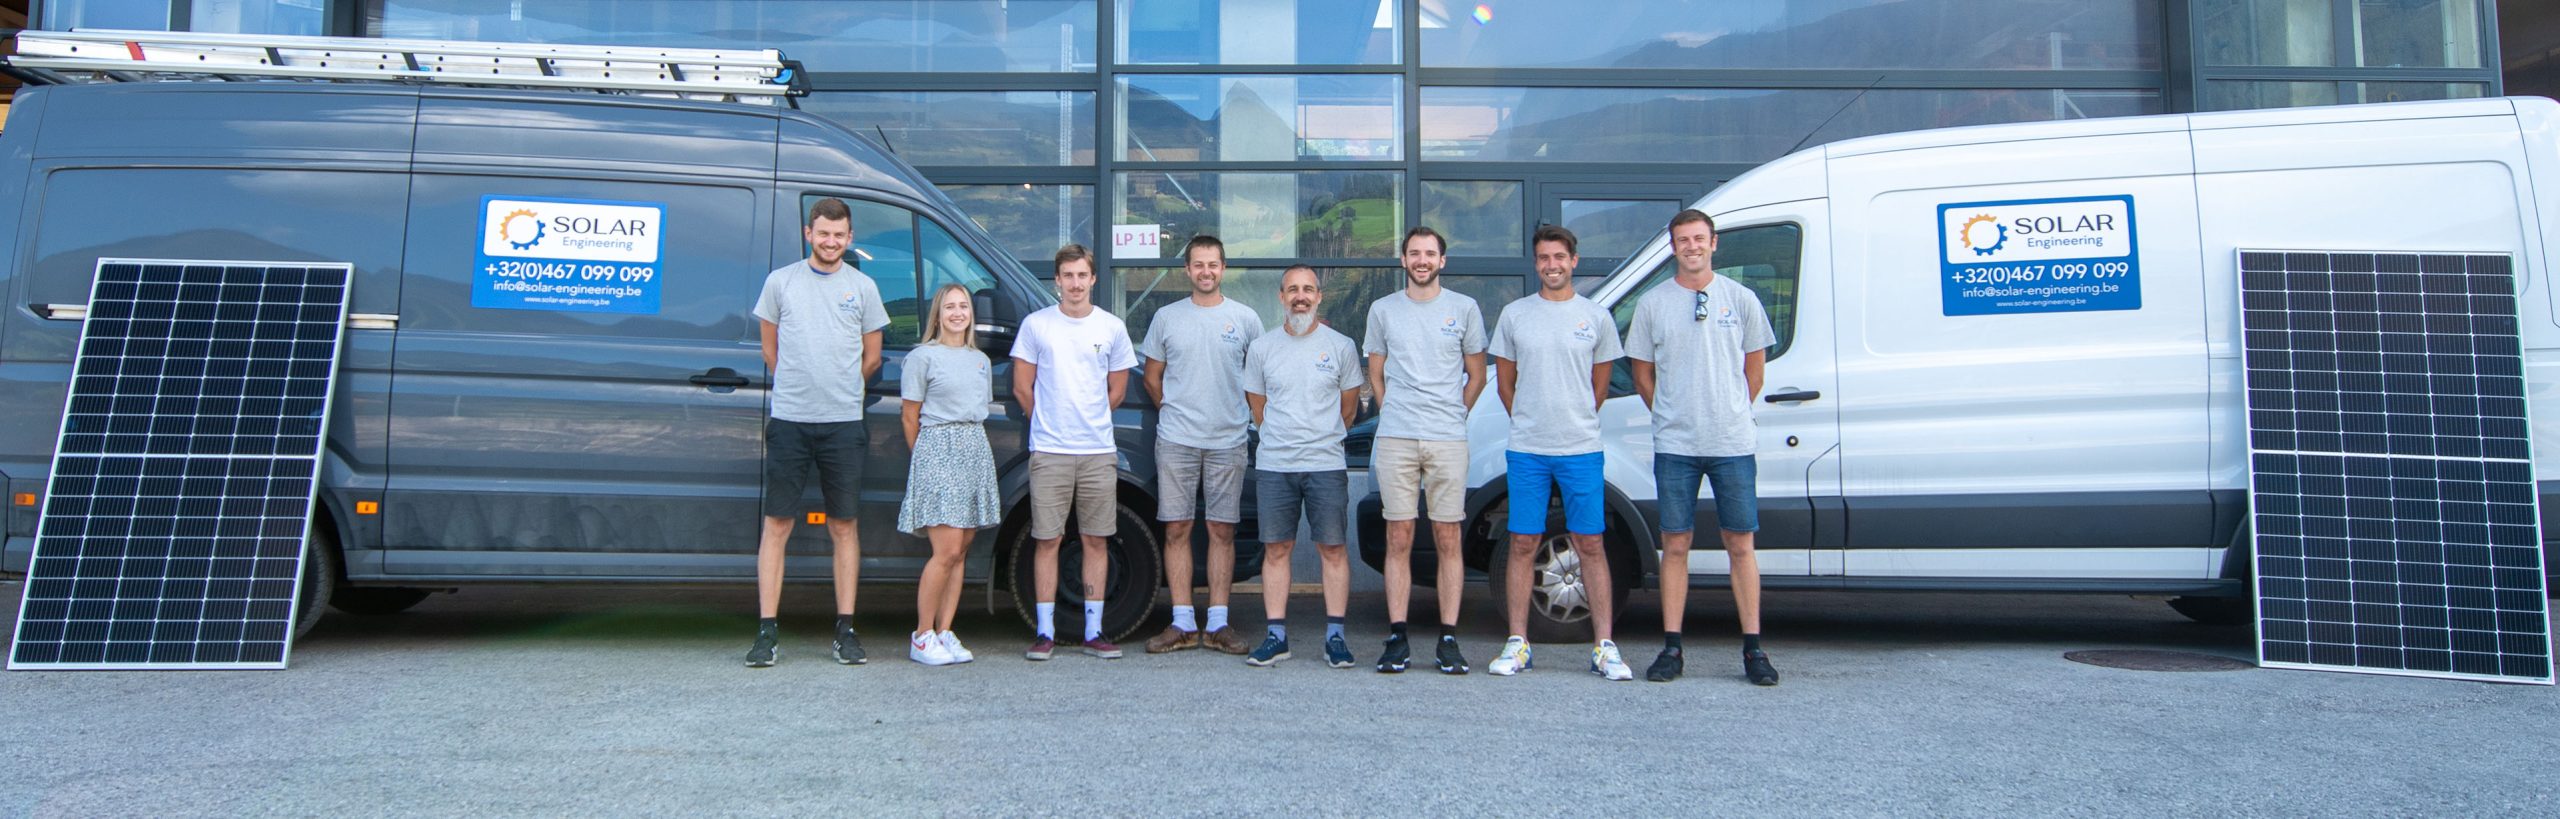 8 teamleden voor camionettes van Solar Engineering